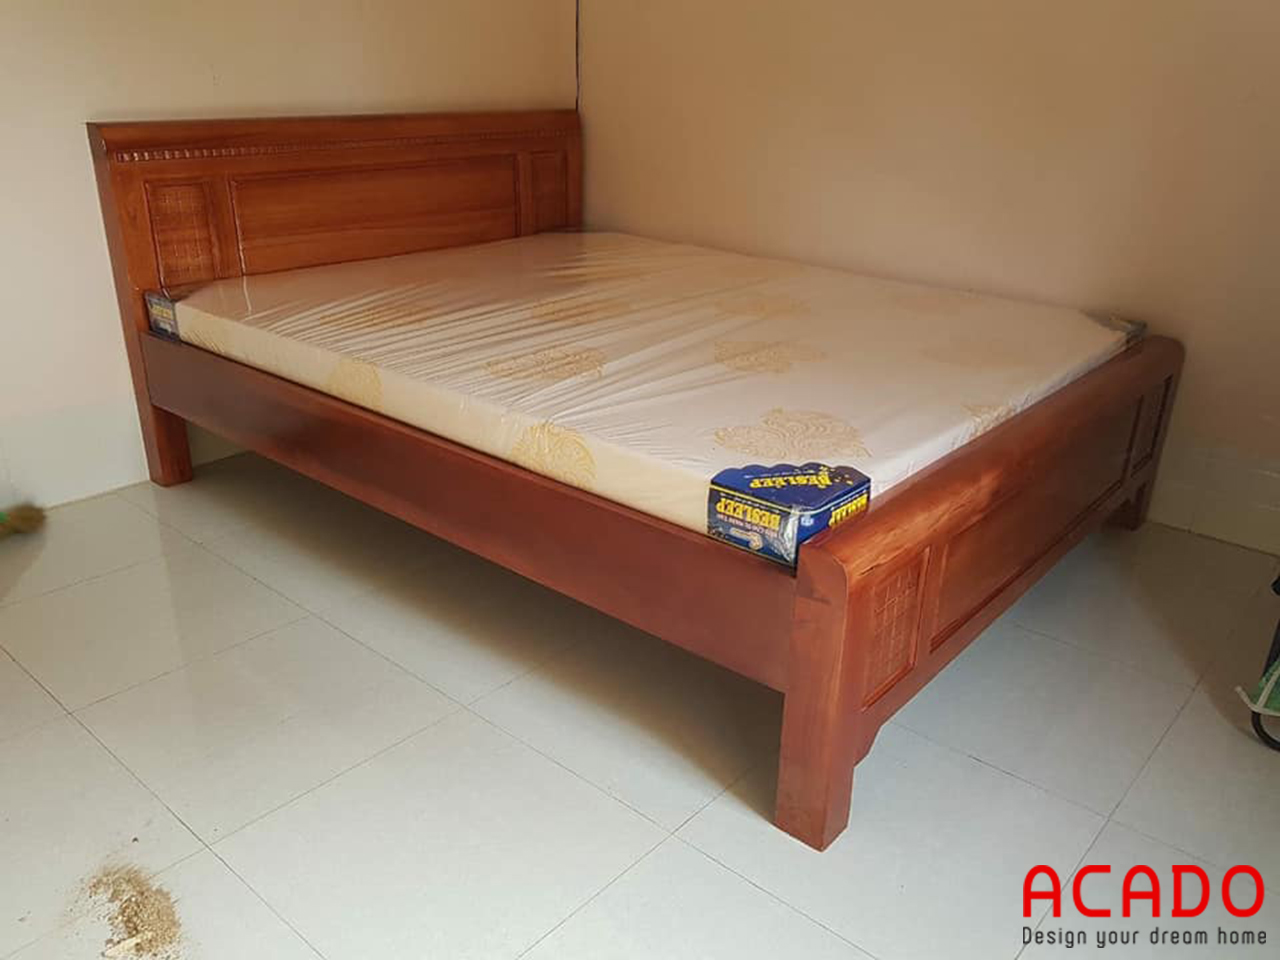 Gường ngủ gỗ nhiên đẹp, bền với thời gian